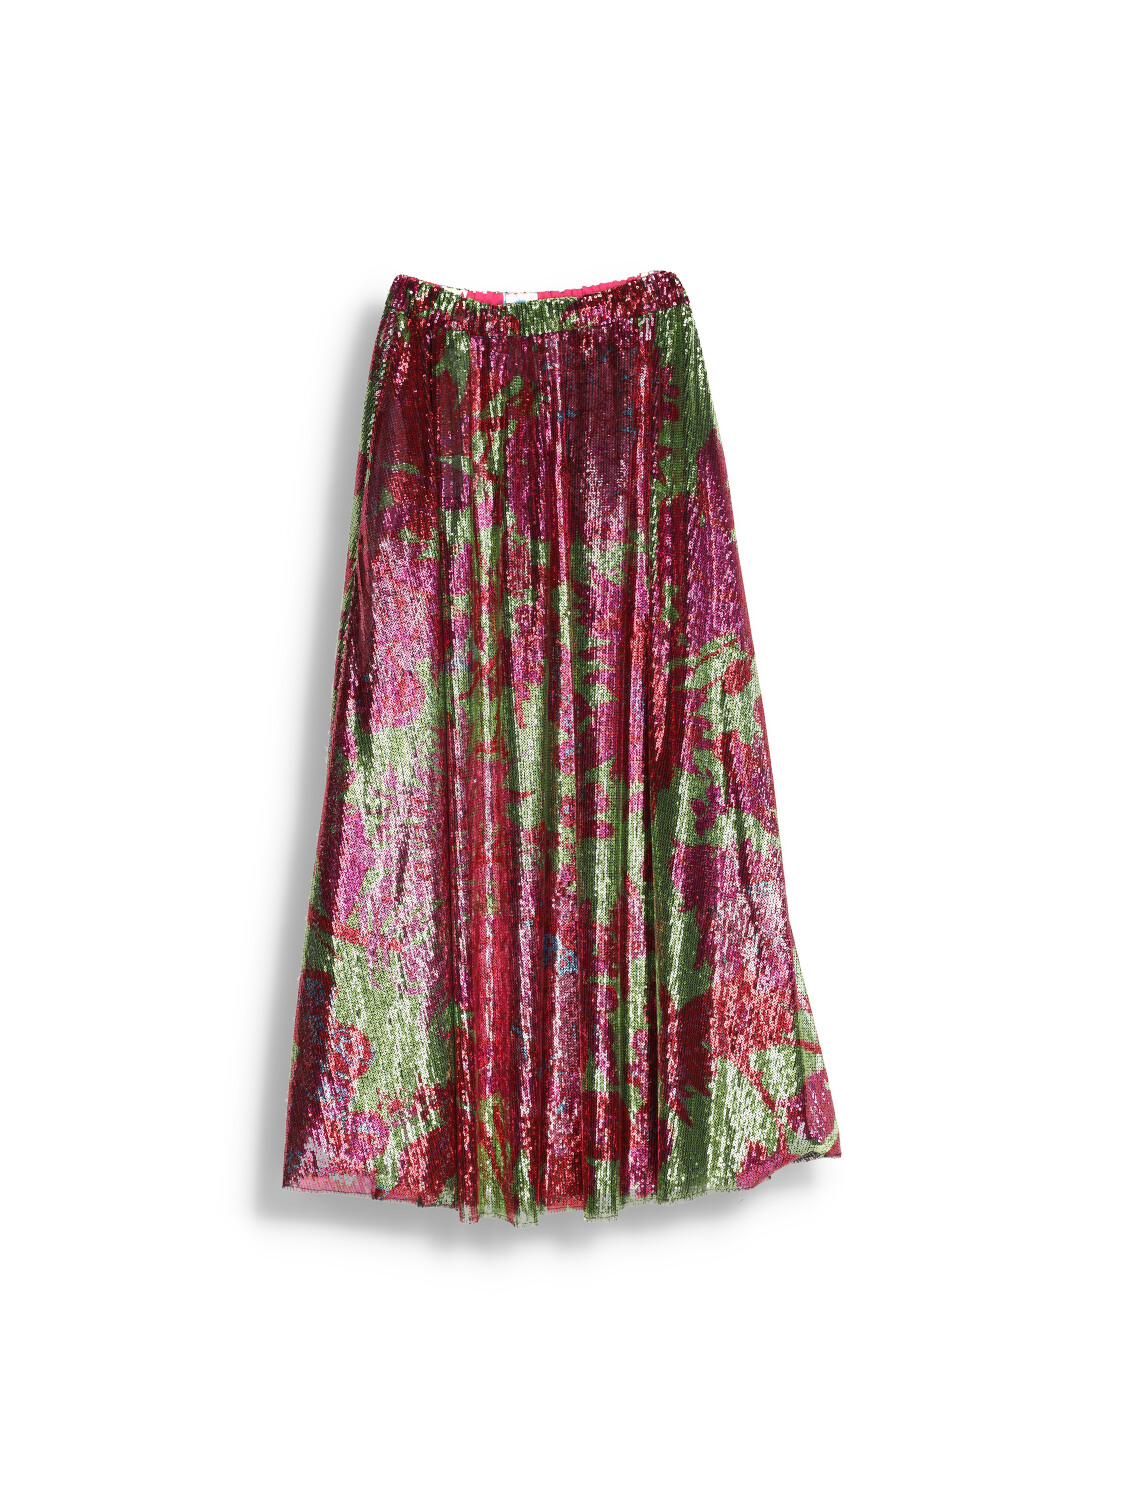 Skirt Fler Adelaide - Midi skirt with sequins